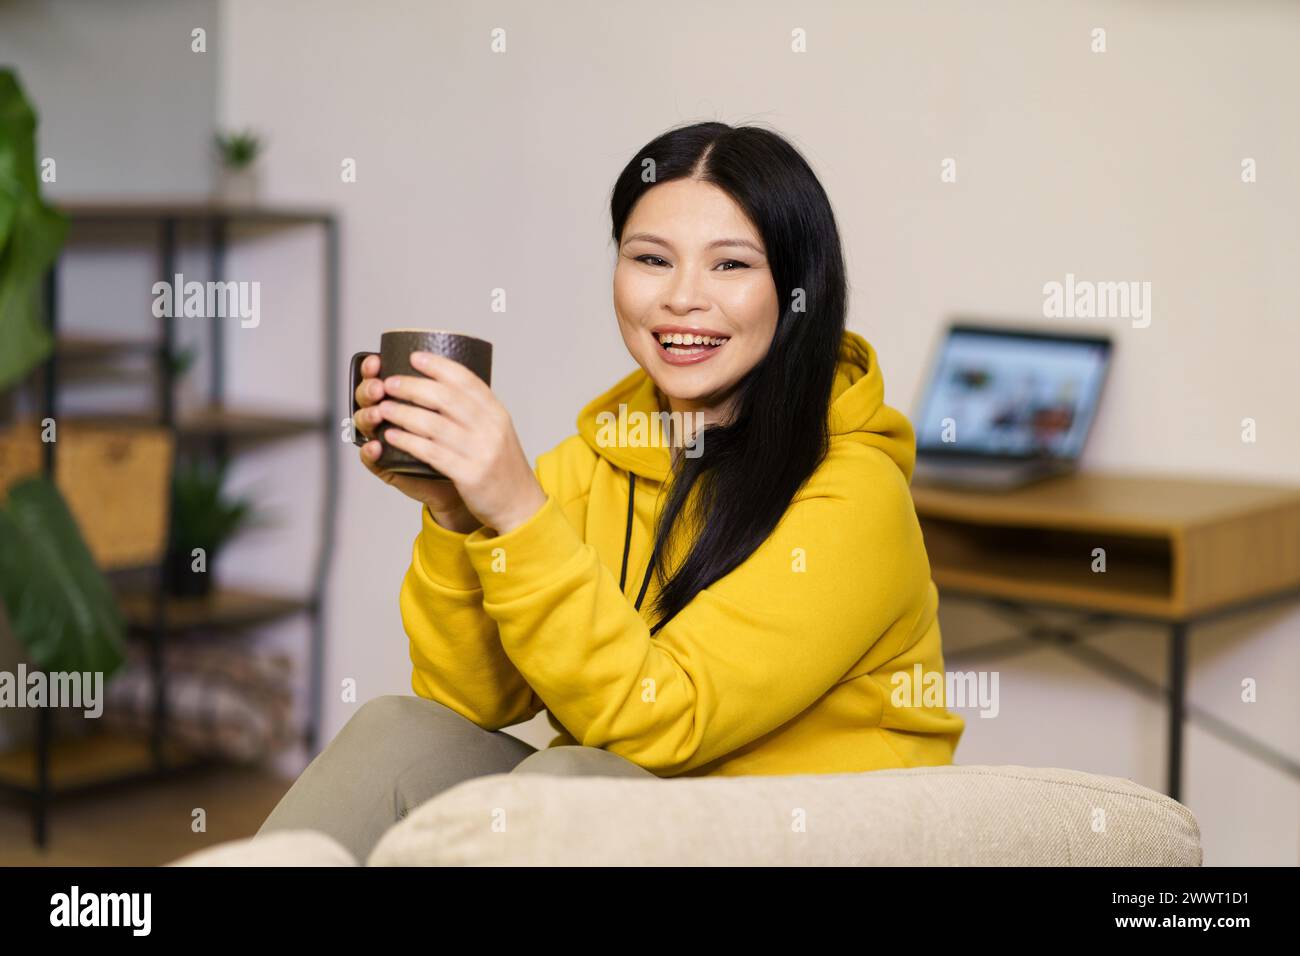 Une femme dans un sweat à capuche jaune sourit tout en tenant une tasse. La chambre a une atmosphère chaleureuse avec un canapé et une plante en pot Banque D'Images